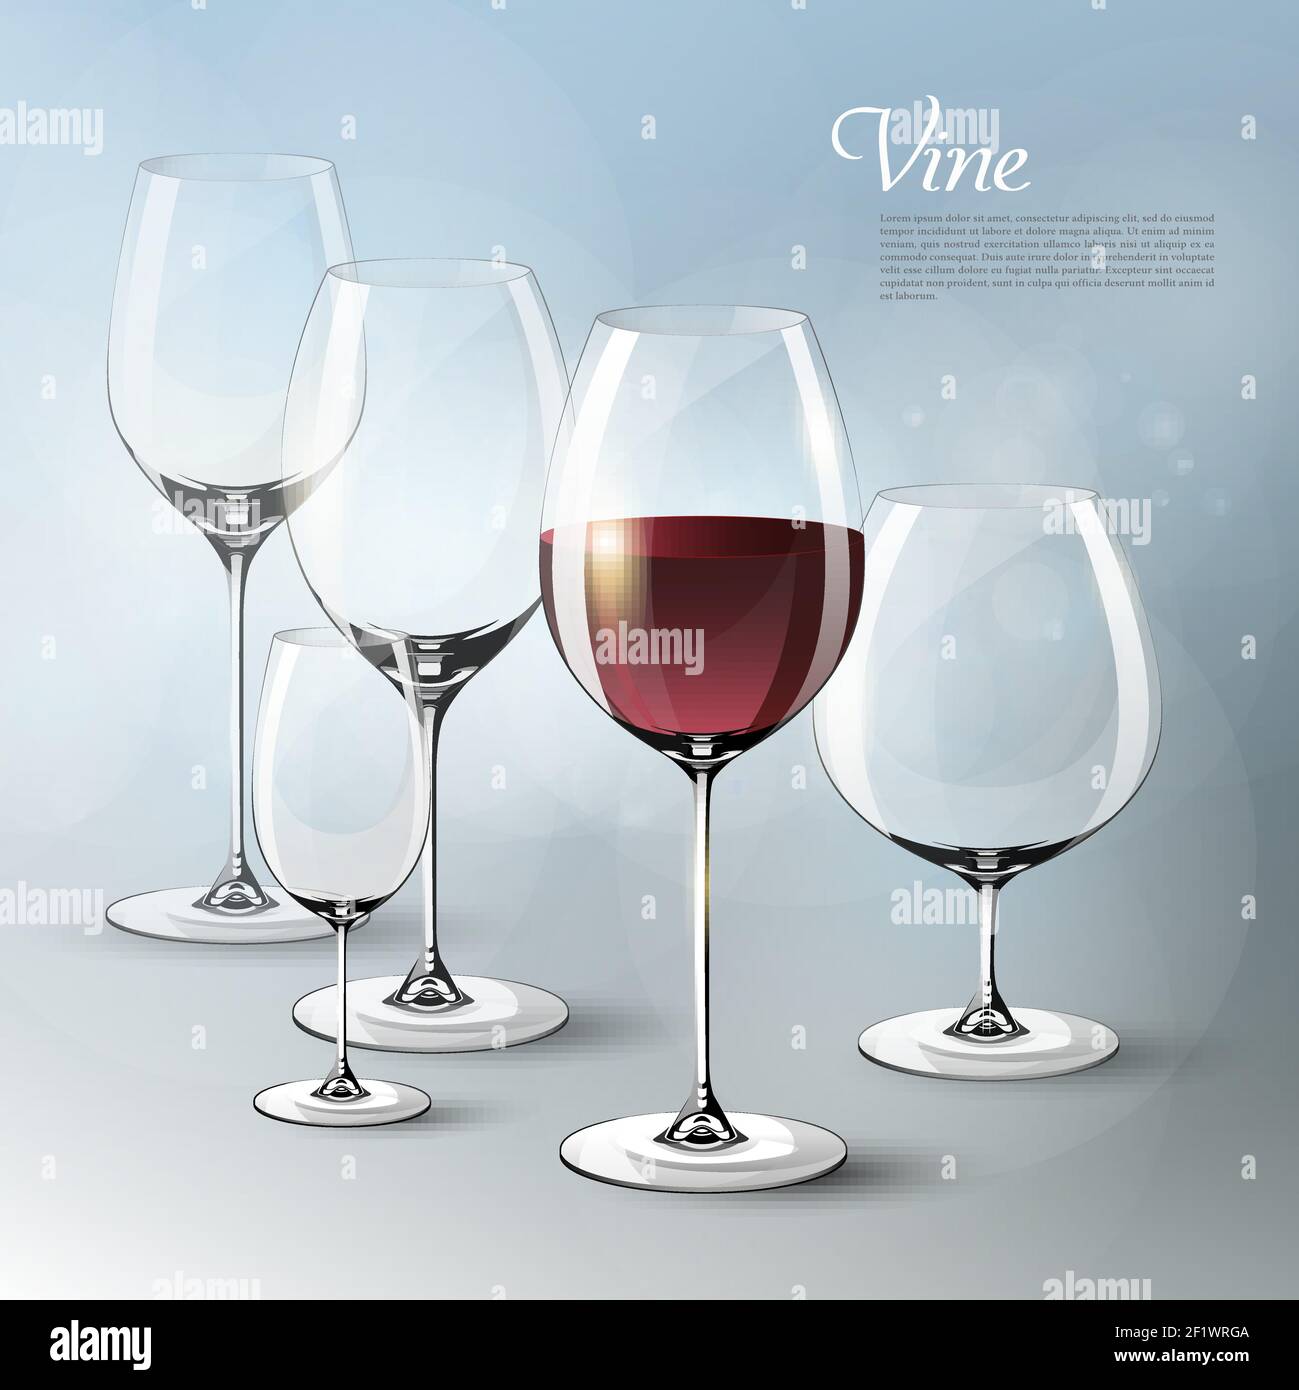 Modello di vino realistico ed elegante con bicchieri vuoti e pieni di dimensioni diverse su grigio Illustrazione Vettoriale